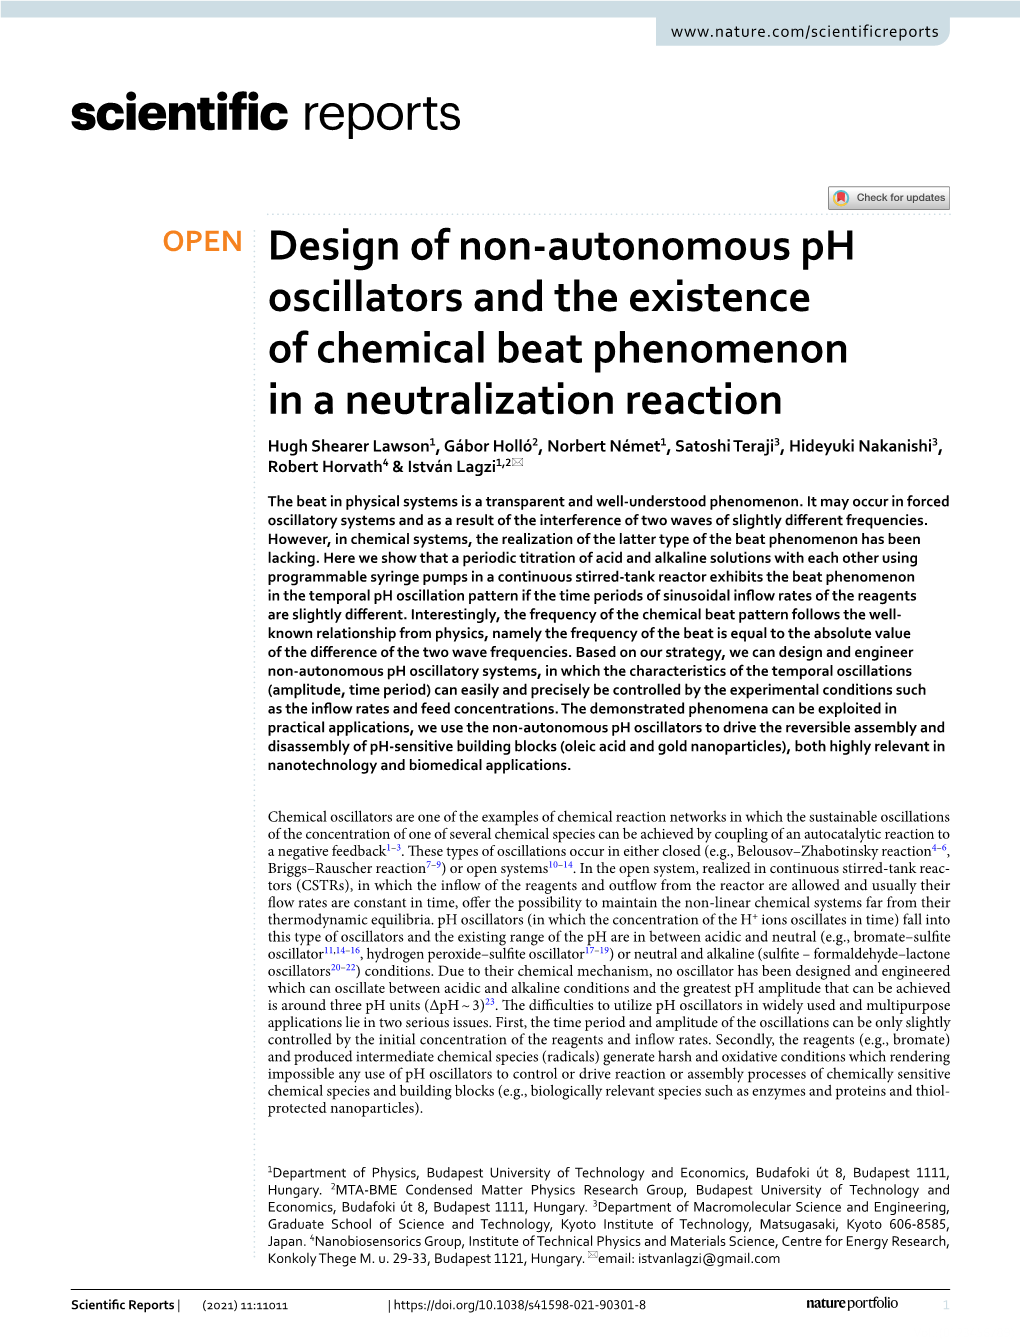 Design of Non-Autonomous Ph Oscillators and the Existence Of